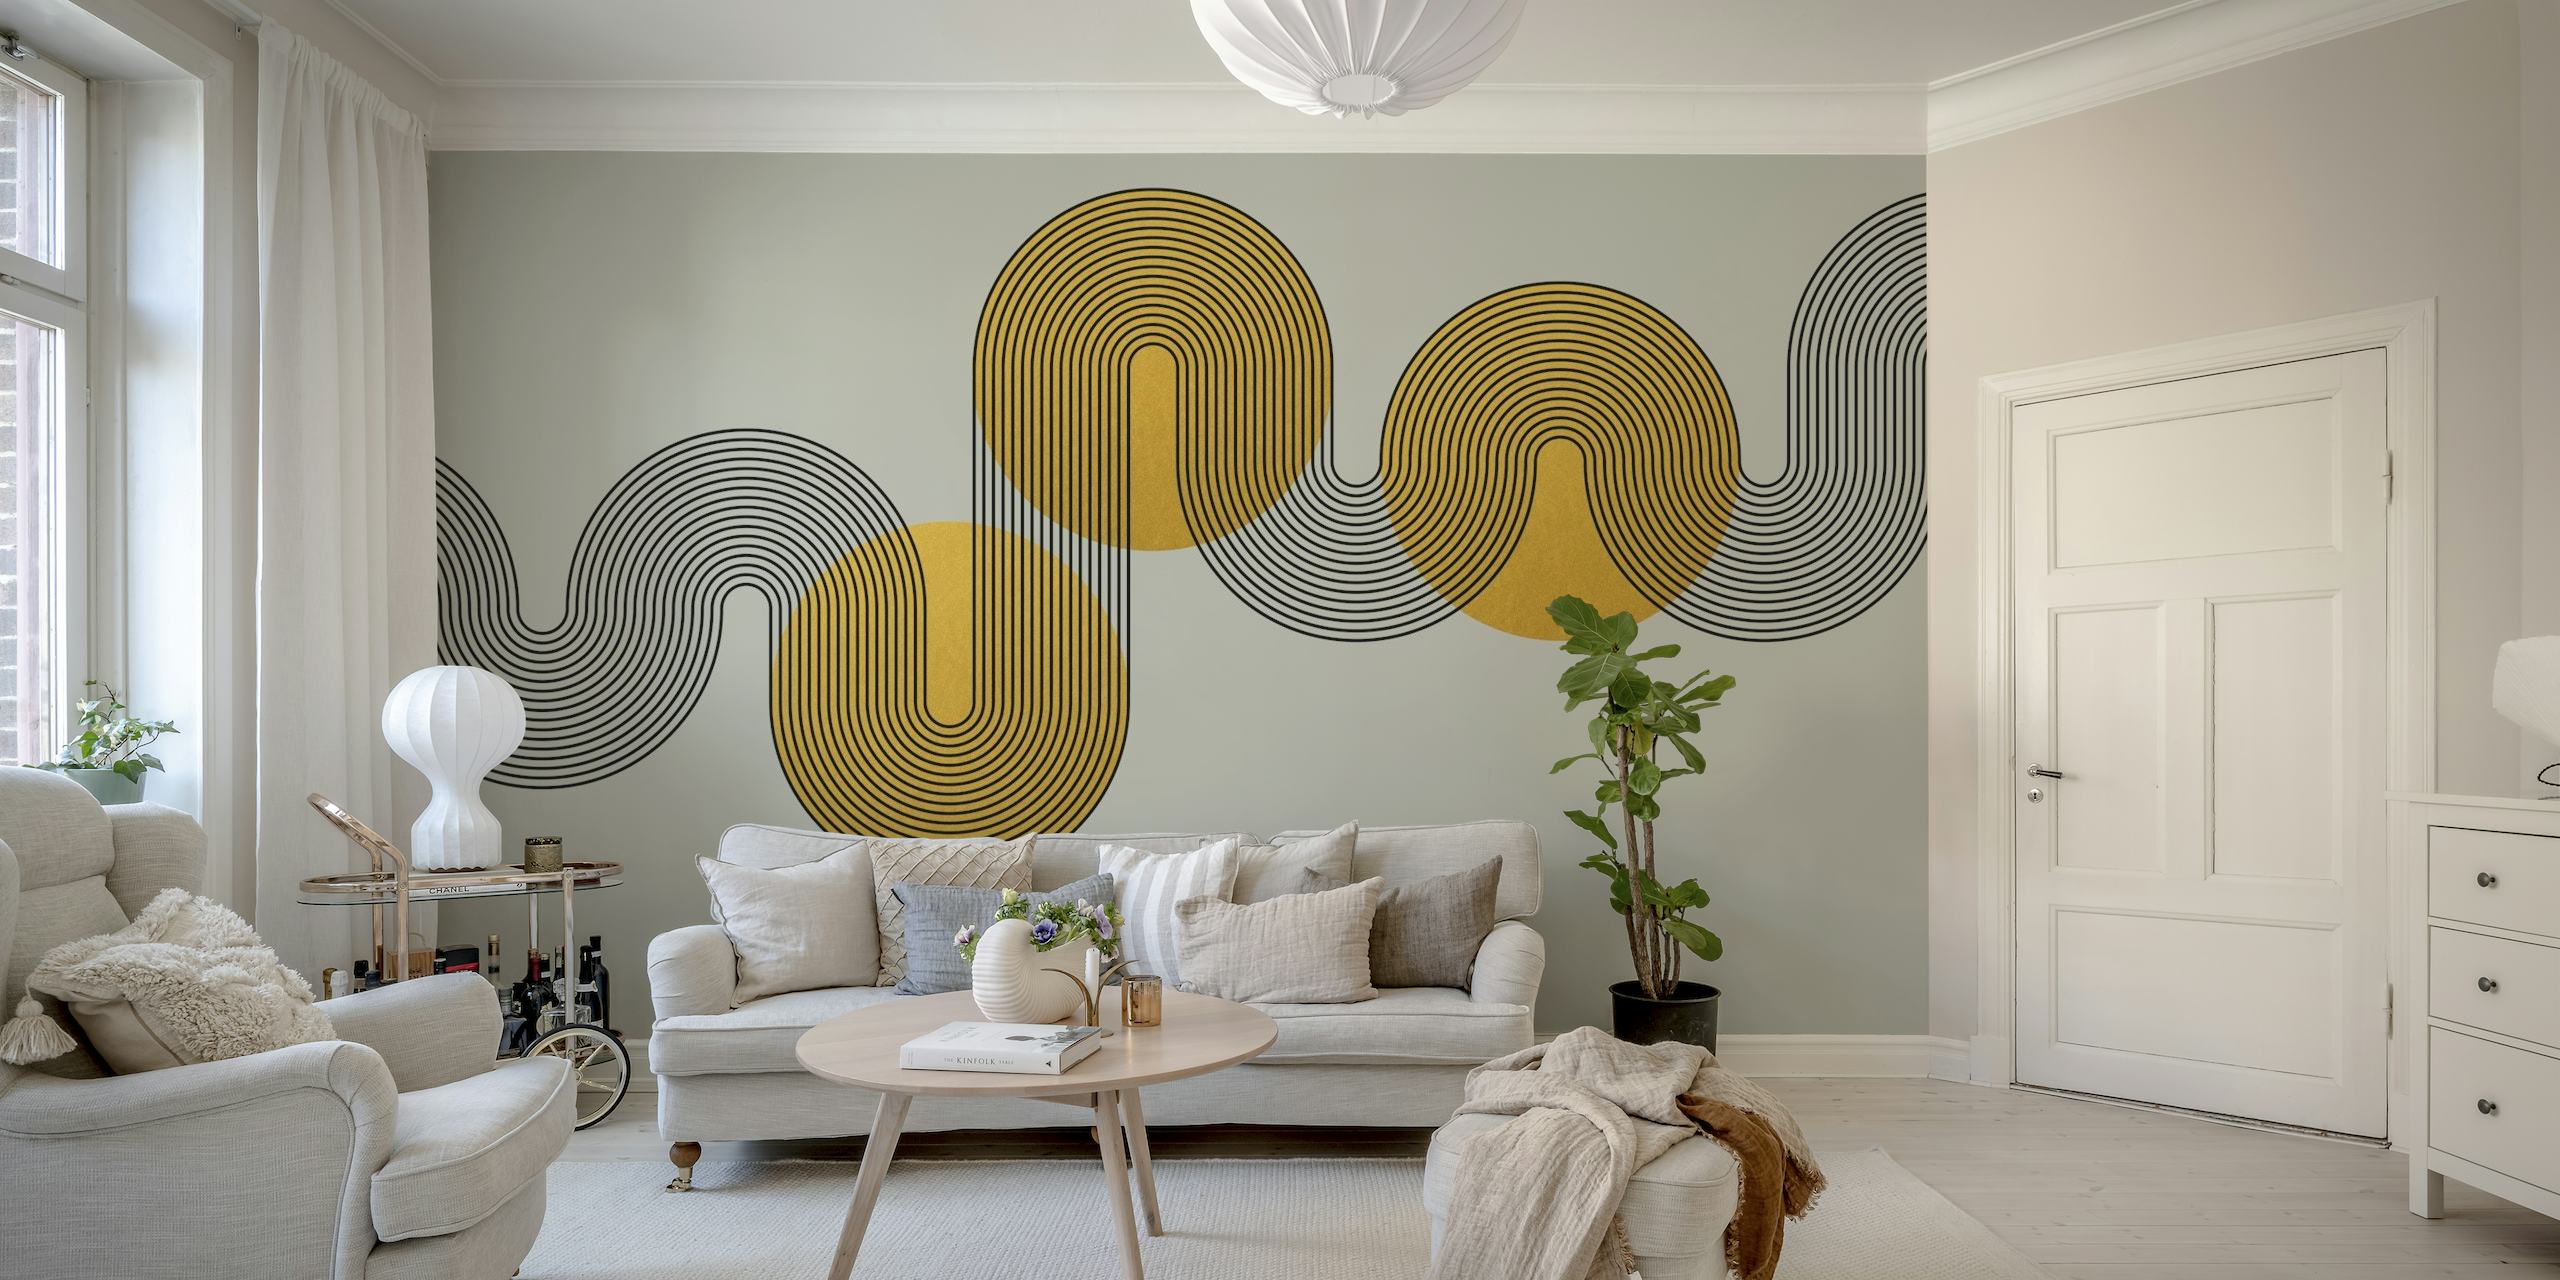 Mural de parede estilo Art Déco abstrato com formas geométricas em tons dourados e cinza